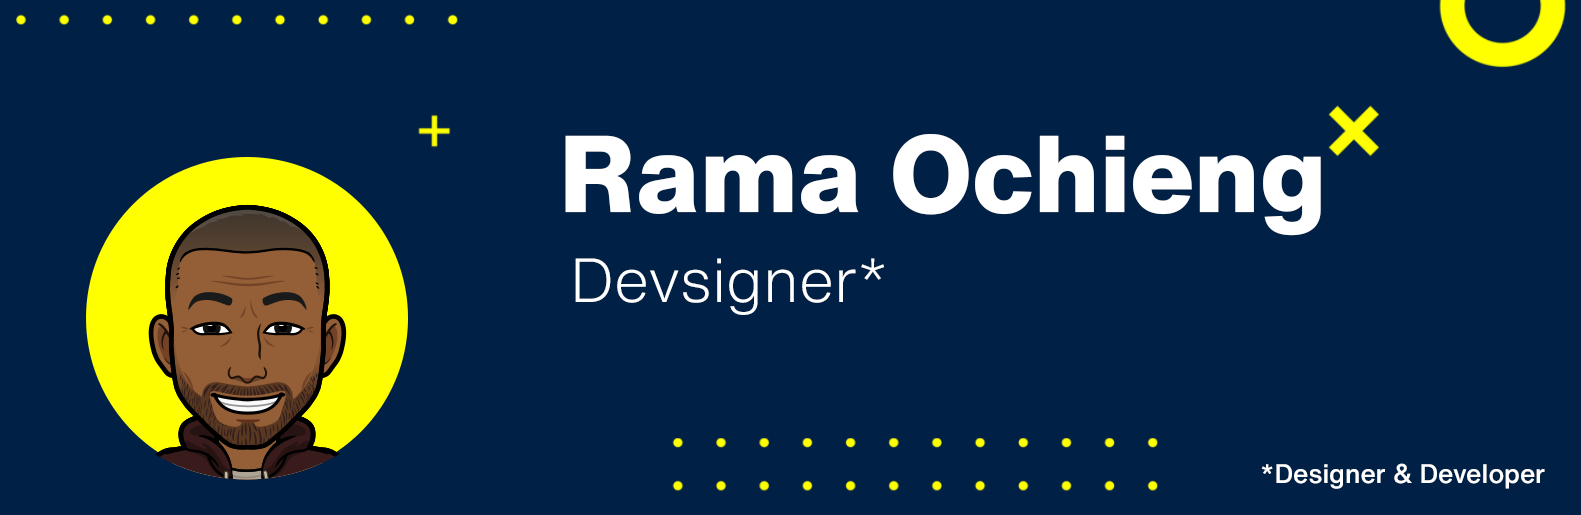 Banner Image for Rama Ochieng, RamaDevsign,Designer and Developer